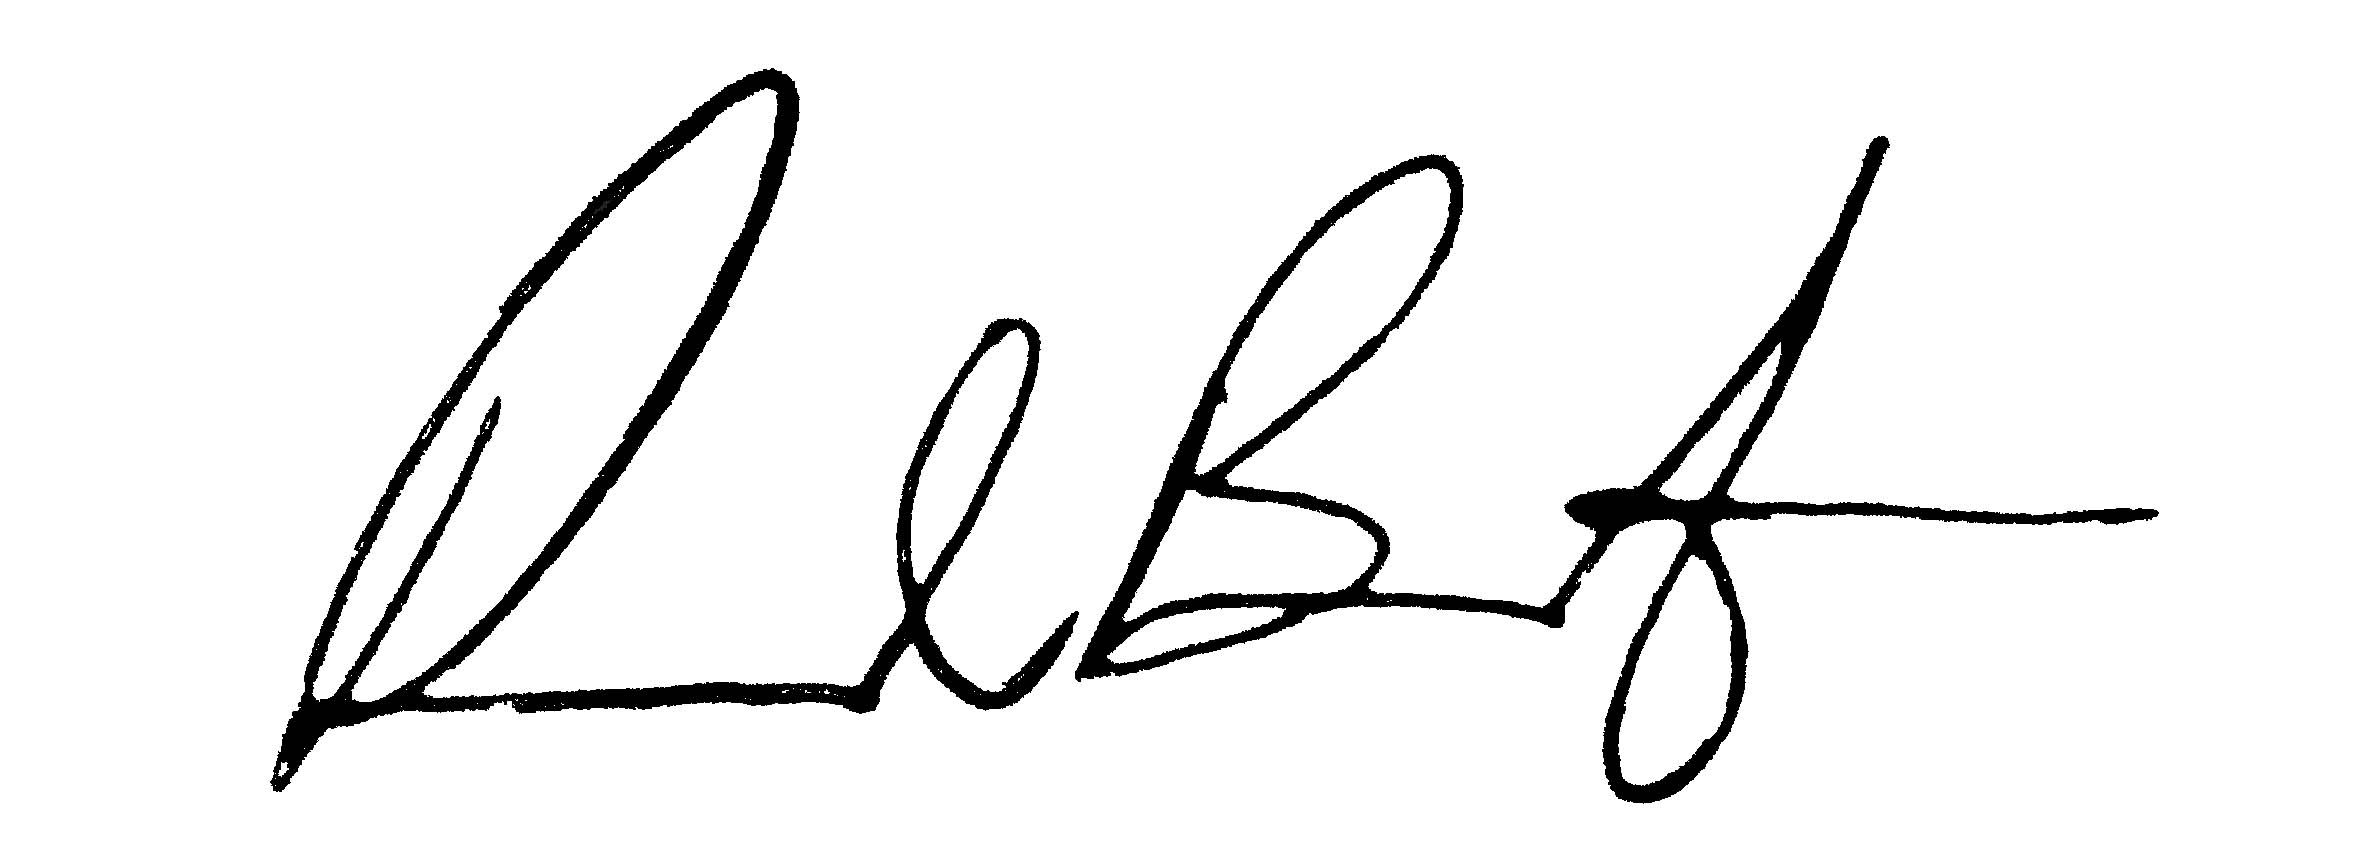 Paul Boniferro's signature.